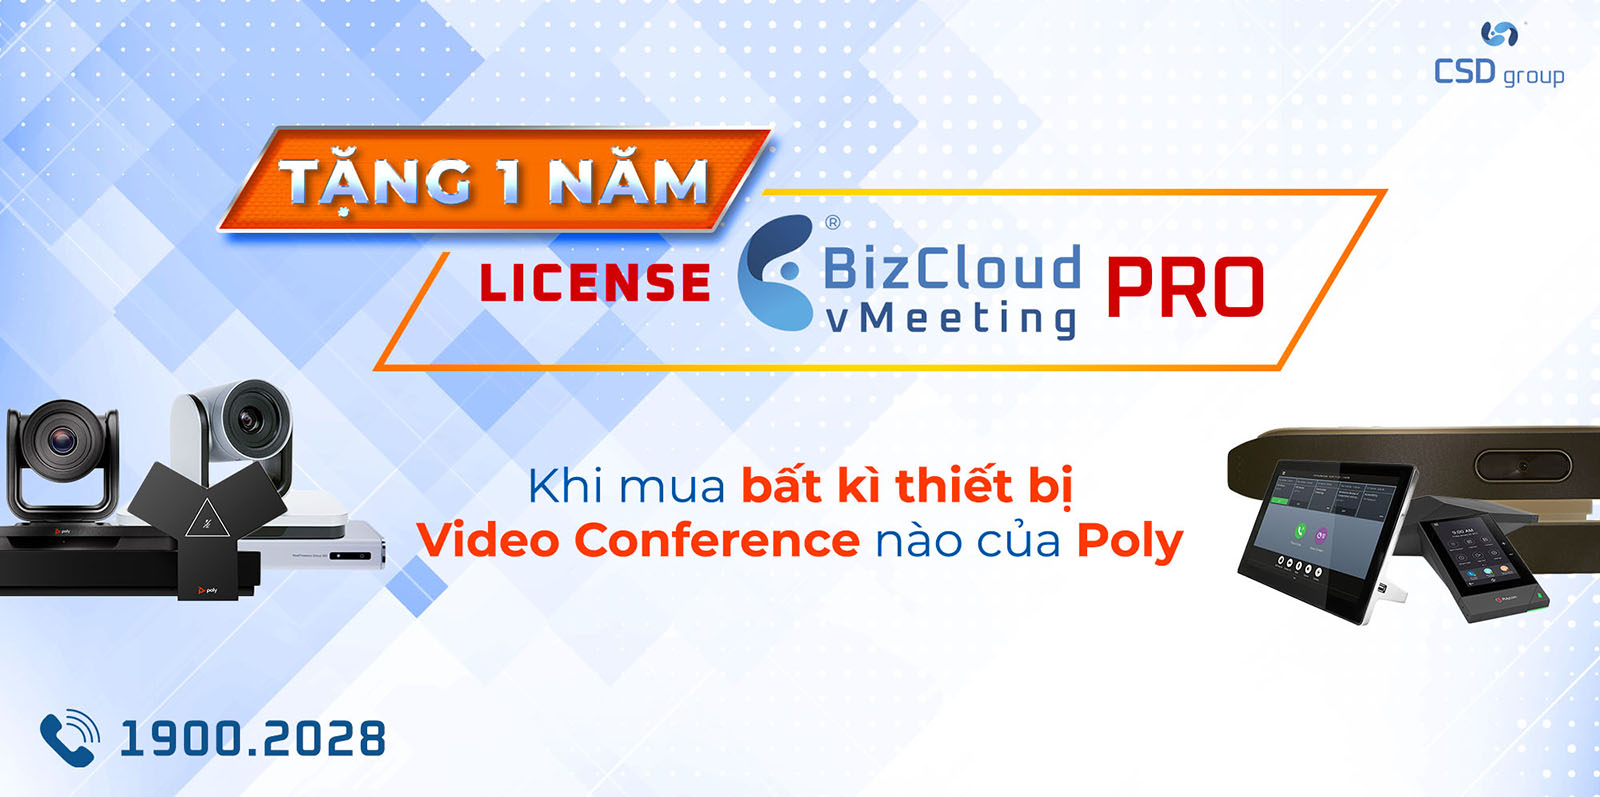 Tặng 1 năm license BizCloud vMeeting khi mua bất kỳ thiết bị họp trực tuyến của Poly